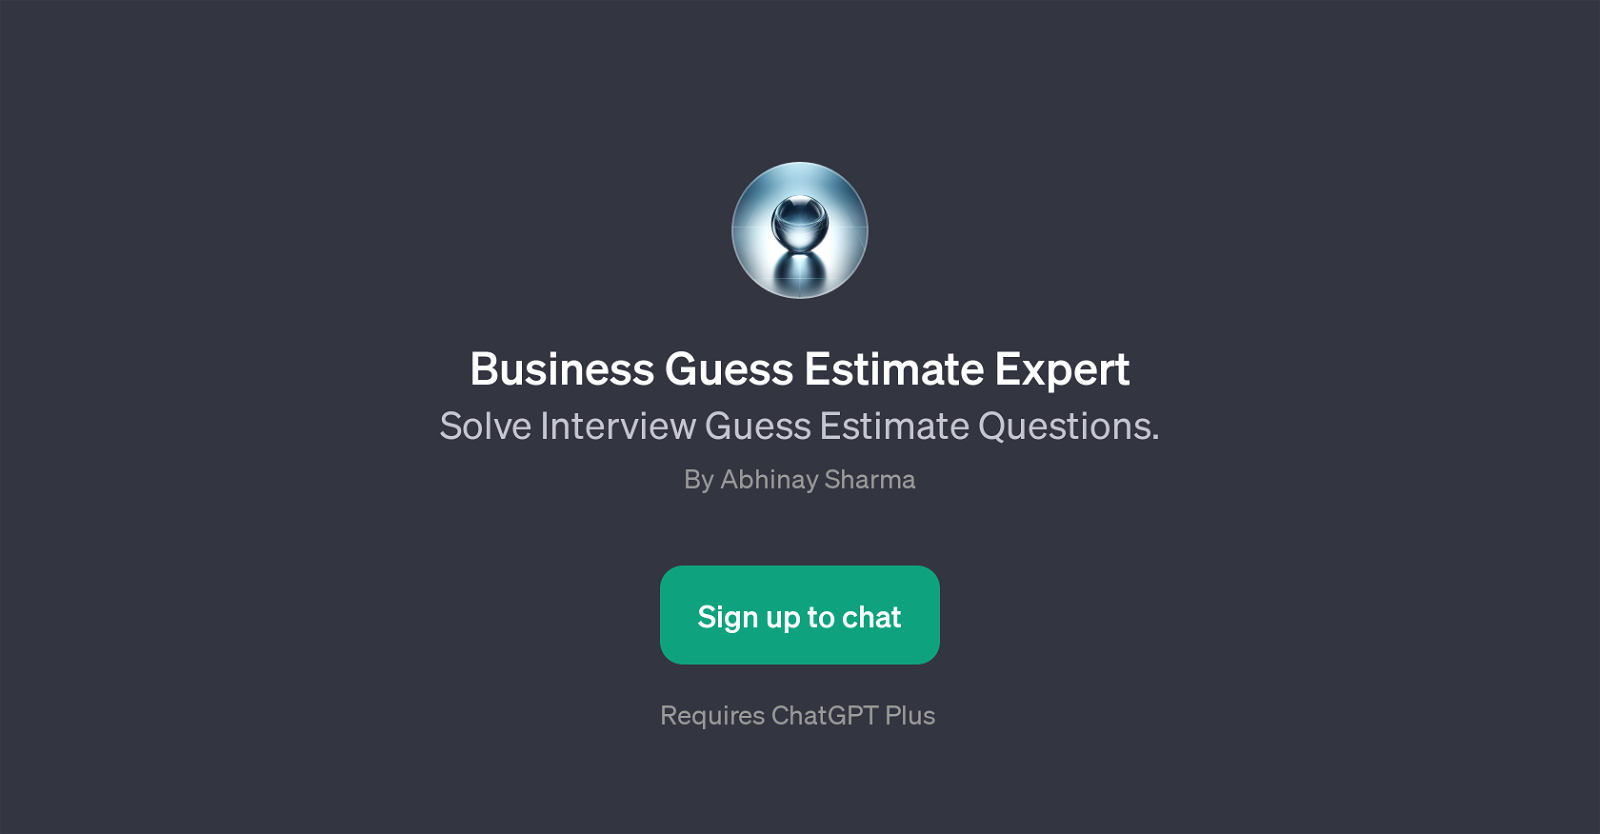 Business Guess Estimate Expert website